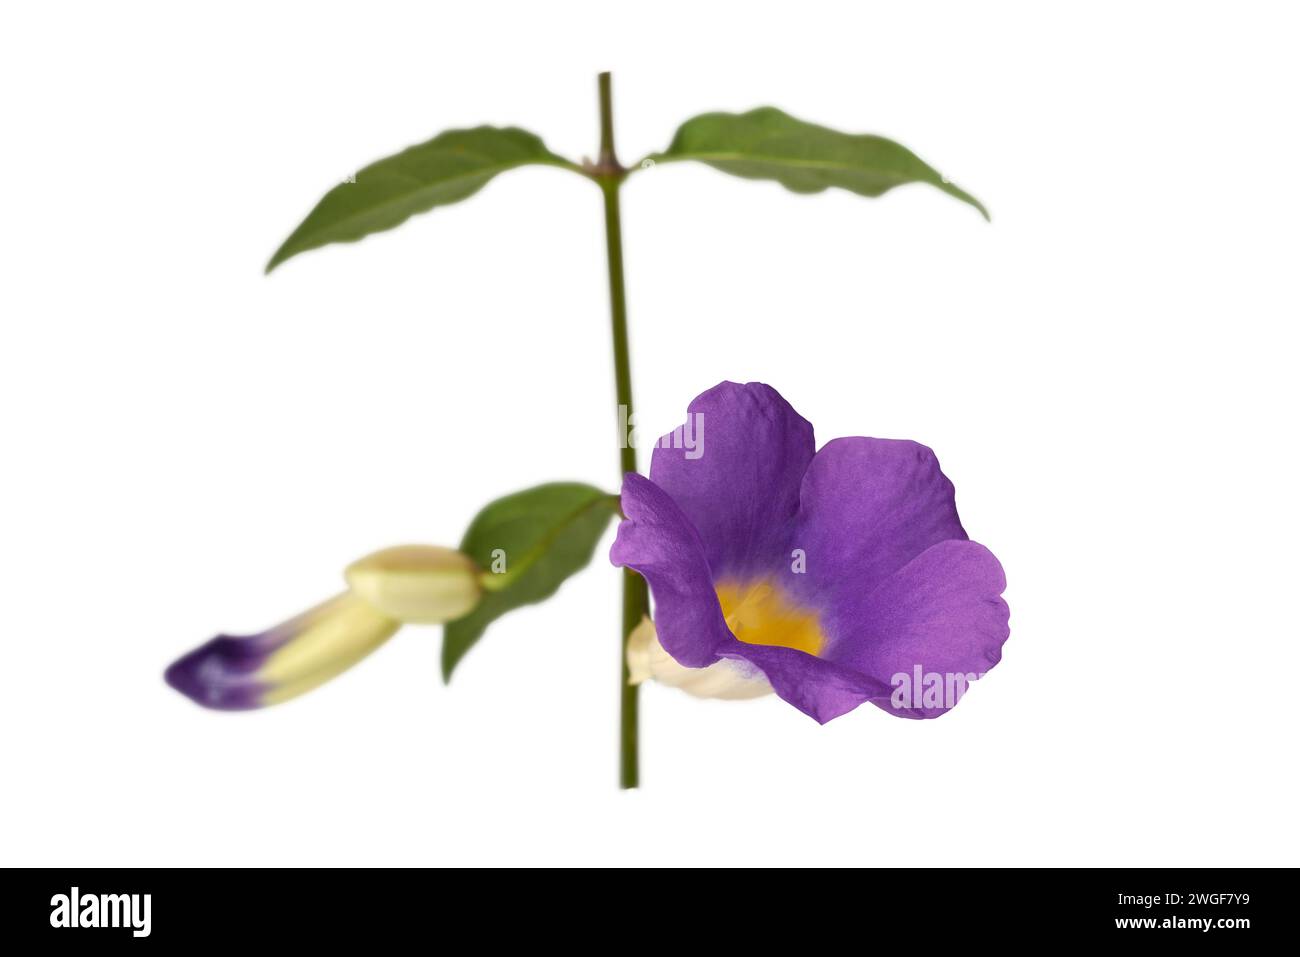 Himmelsfeines Pflanzenlaub mit violetter oder lavendelblauer Blume, Thunbergia grandiflora, auch bekannt als Uhrenrebe, blaue Trompetenrebe oder Himmelsblume, selektiver Fokus Stockfoto